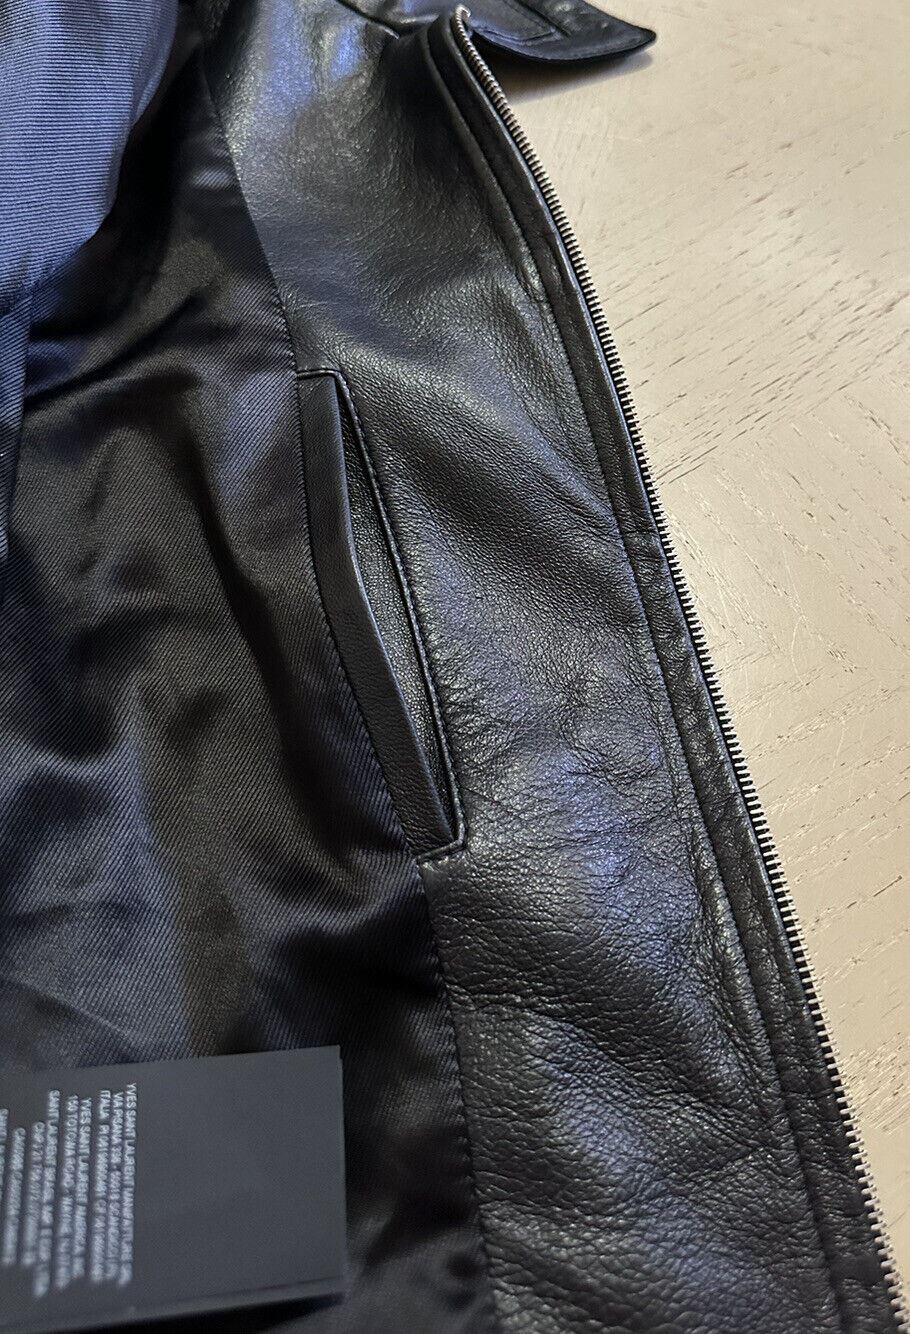 Новая мужская кожаная/замшевая куртка Saint Laurent за 5490 долларов США, черная 44 US/54 EU Италия